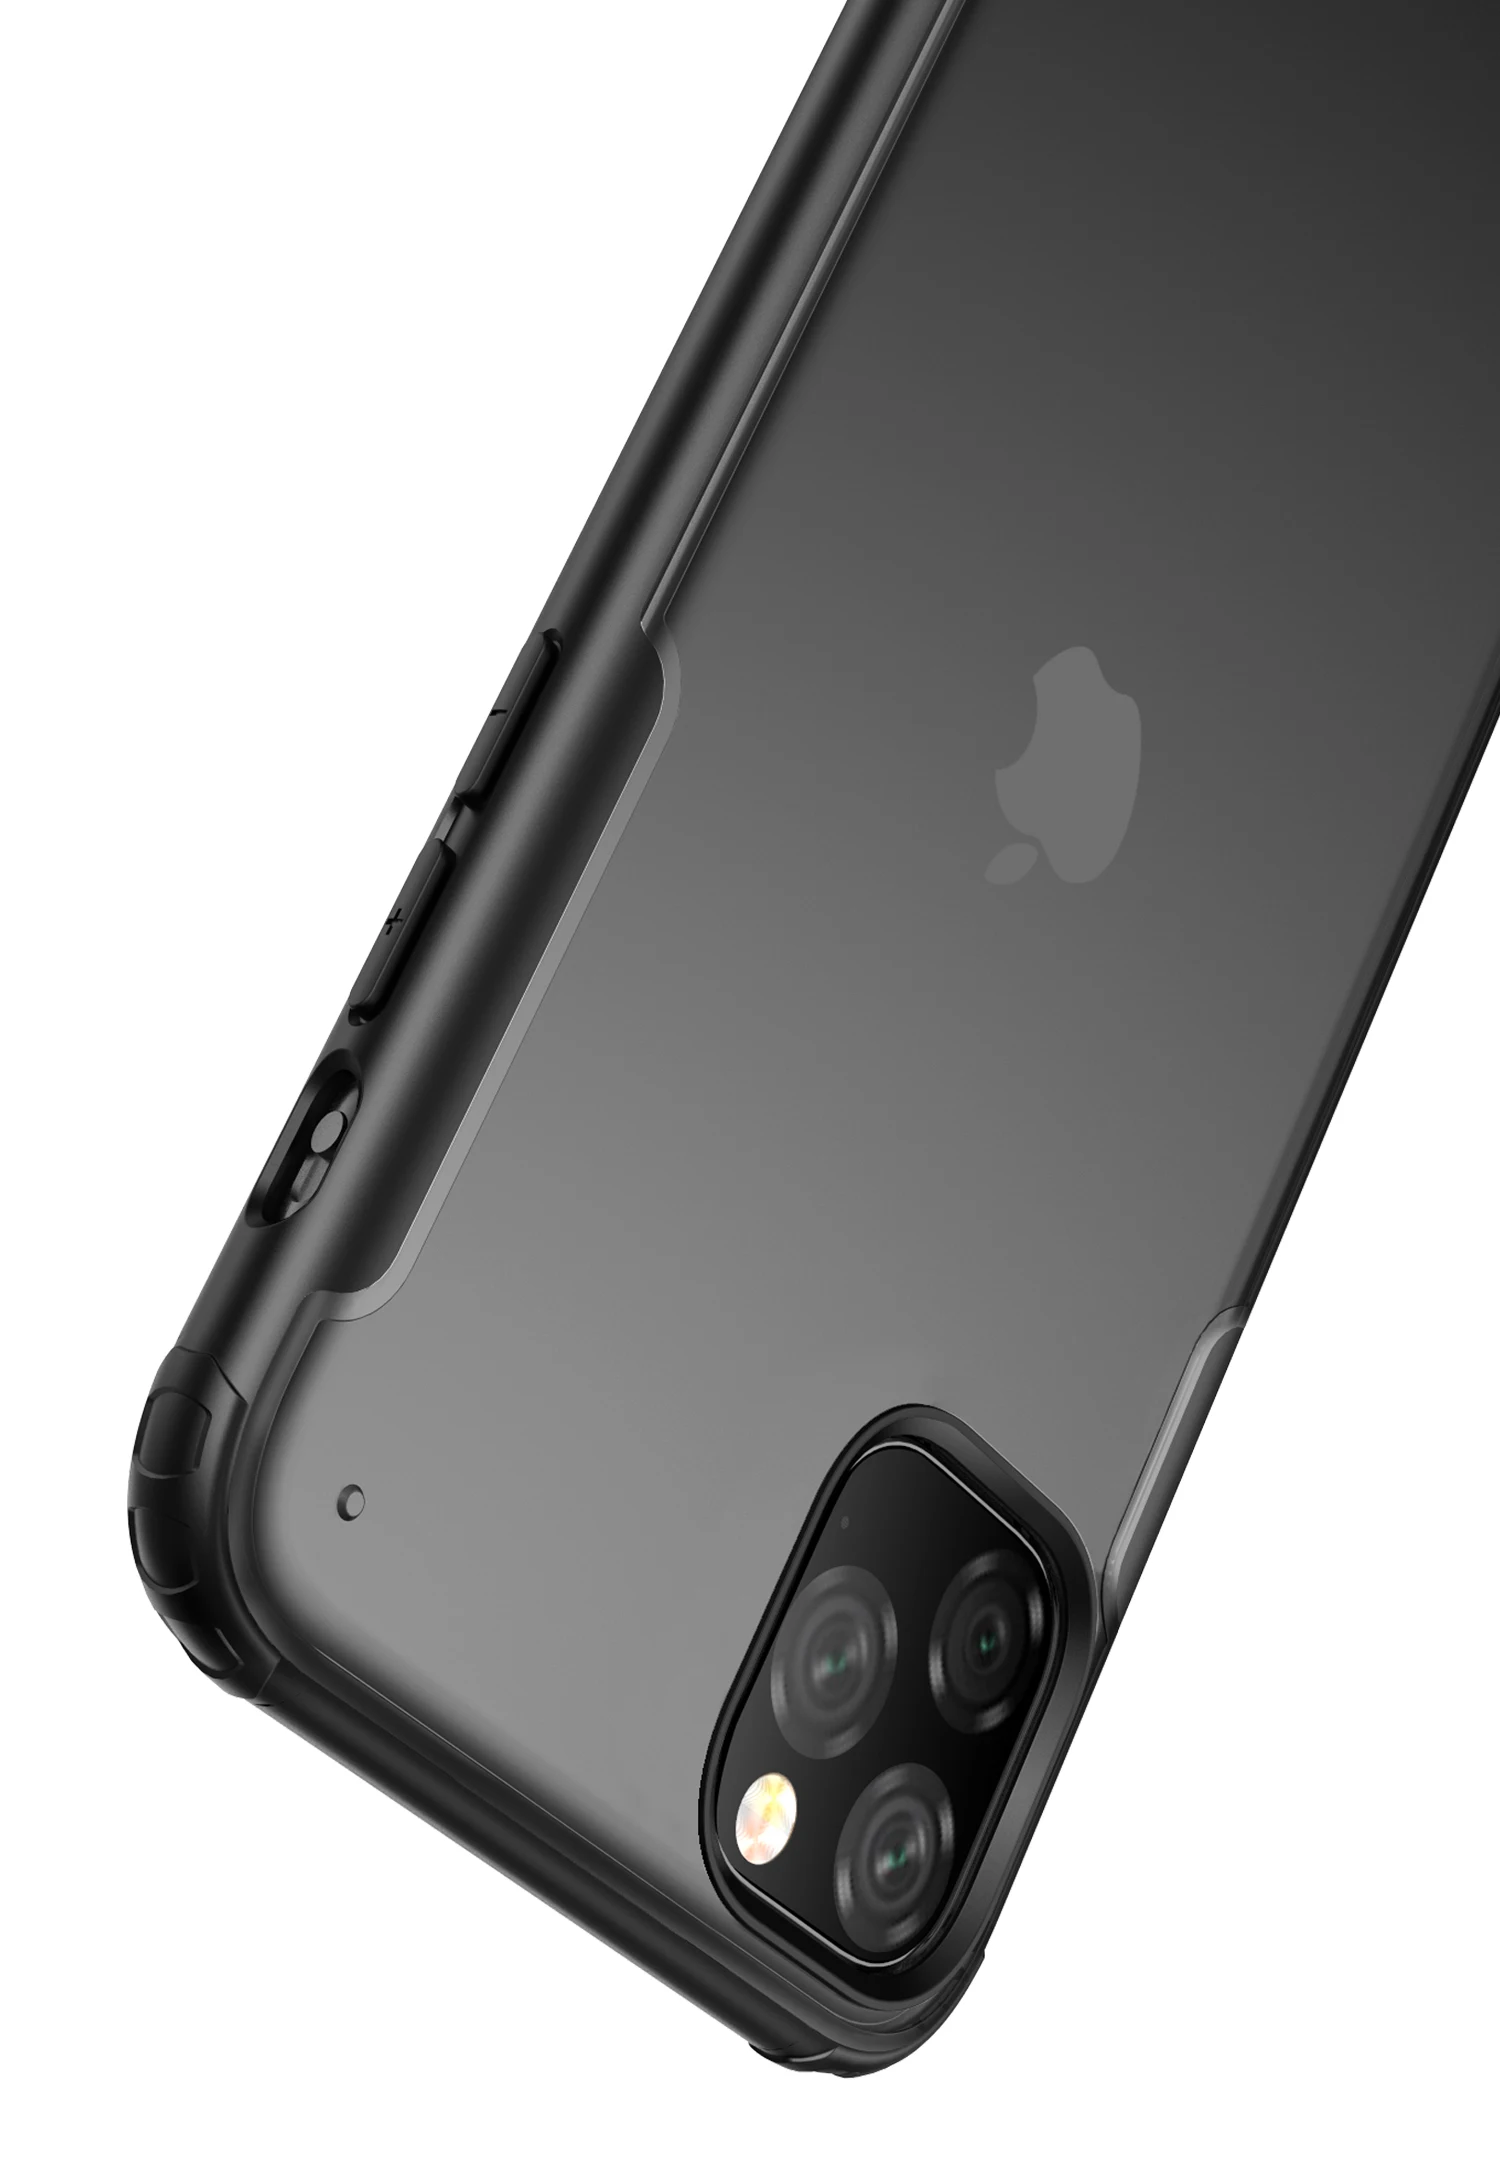 Резиновый ТПУ бампер противоударный чехол для iPhone 11 11Pro Max ультра тонкий прозрачный кристалл прозрачная крышка для компьютера Капа Fundas